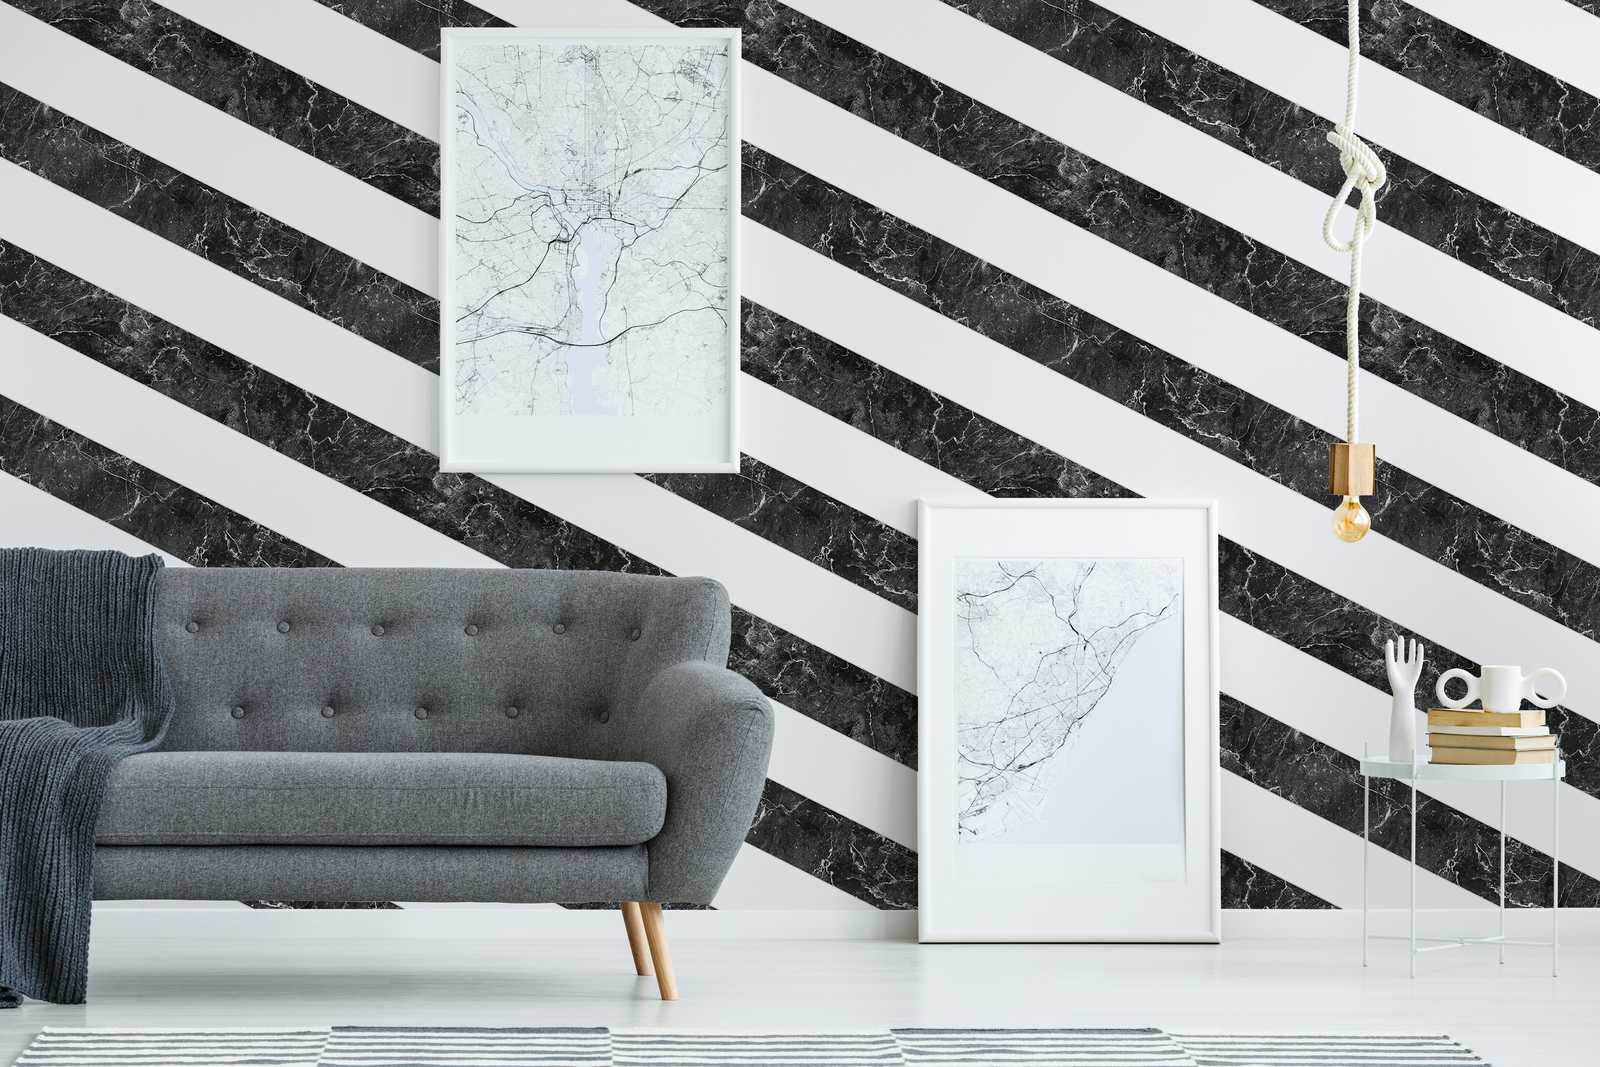             Papel pintado de rayas aspecto mármol rayas horizontales diseño blanco y negro
        